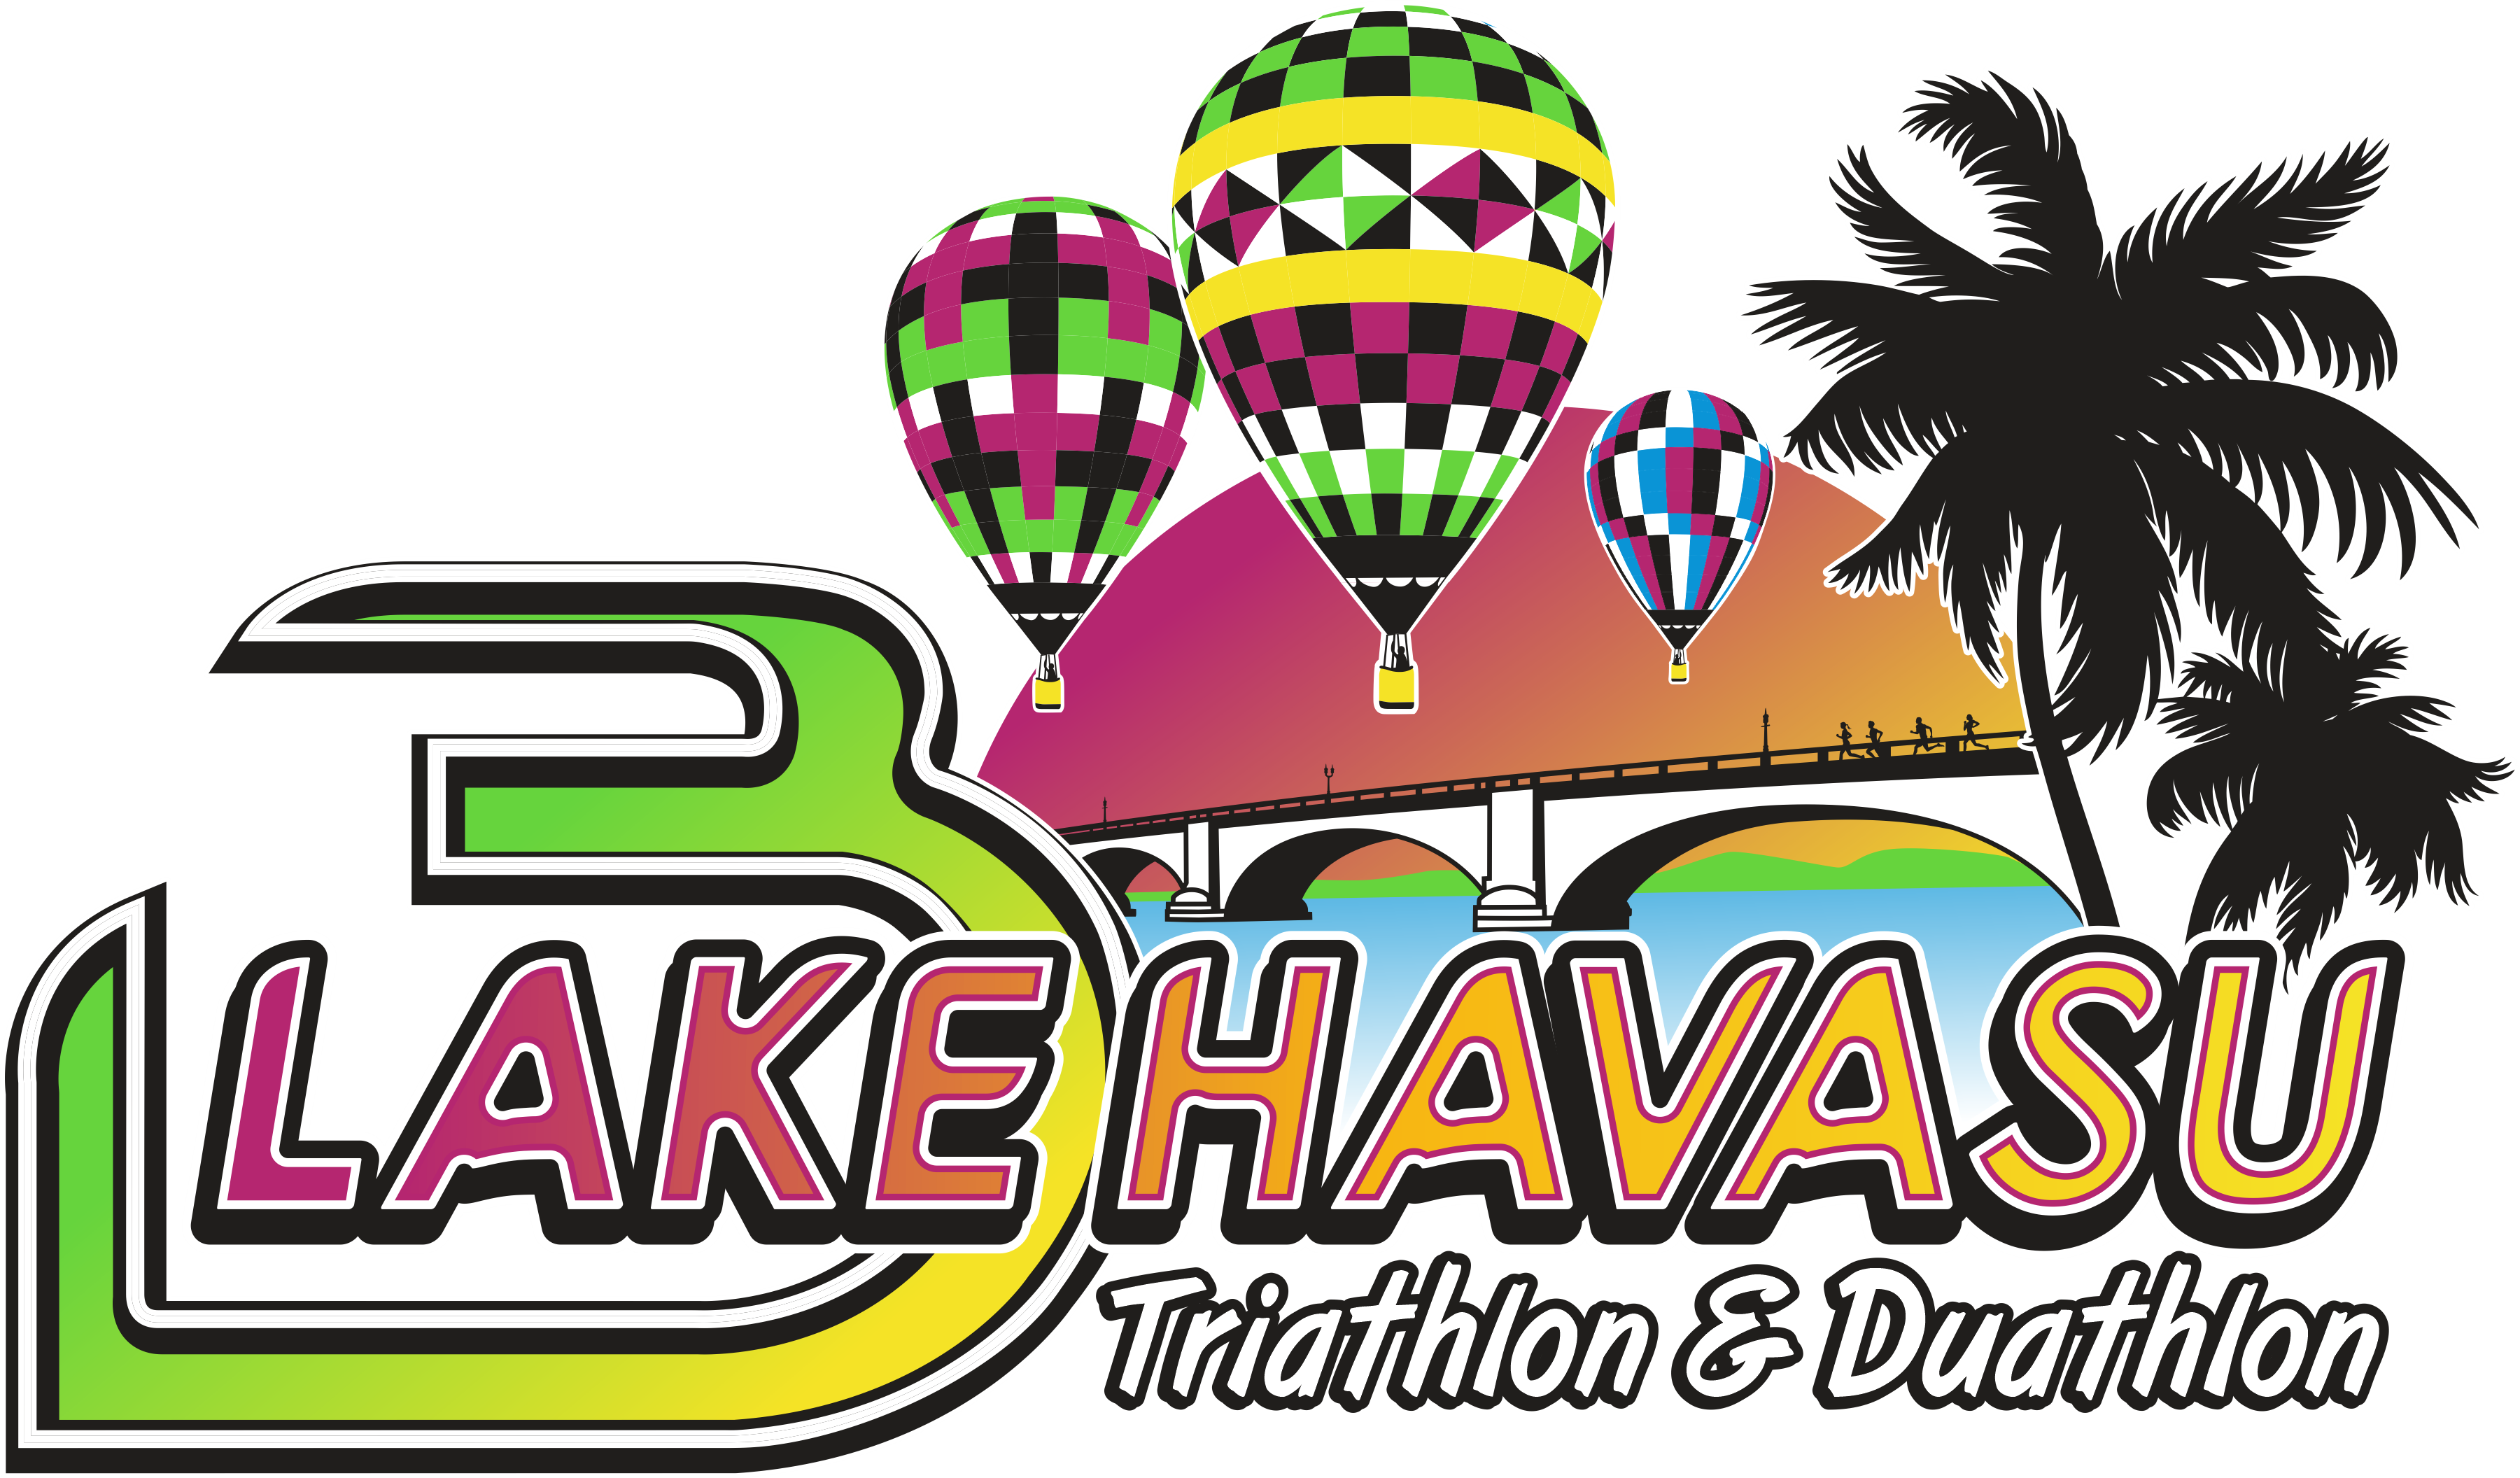 3-Disciplines-Lake-Havasu-1 Lake Havasu Triathlon and Duathlon